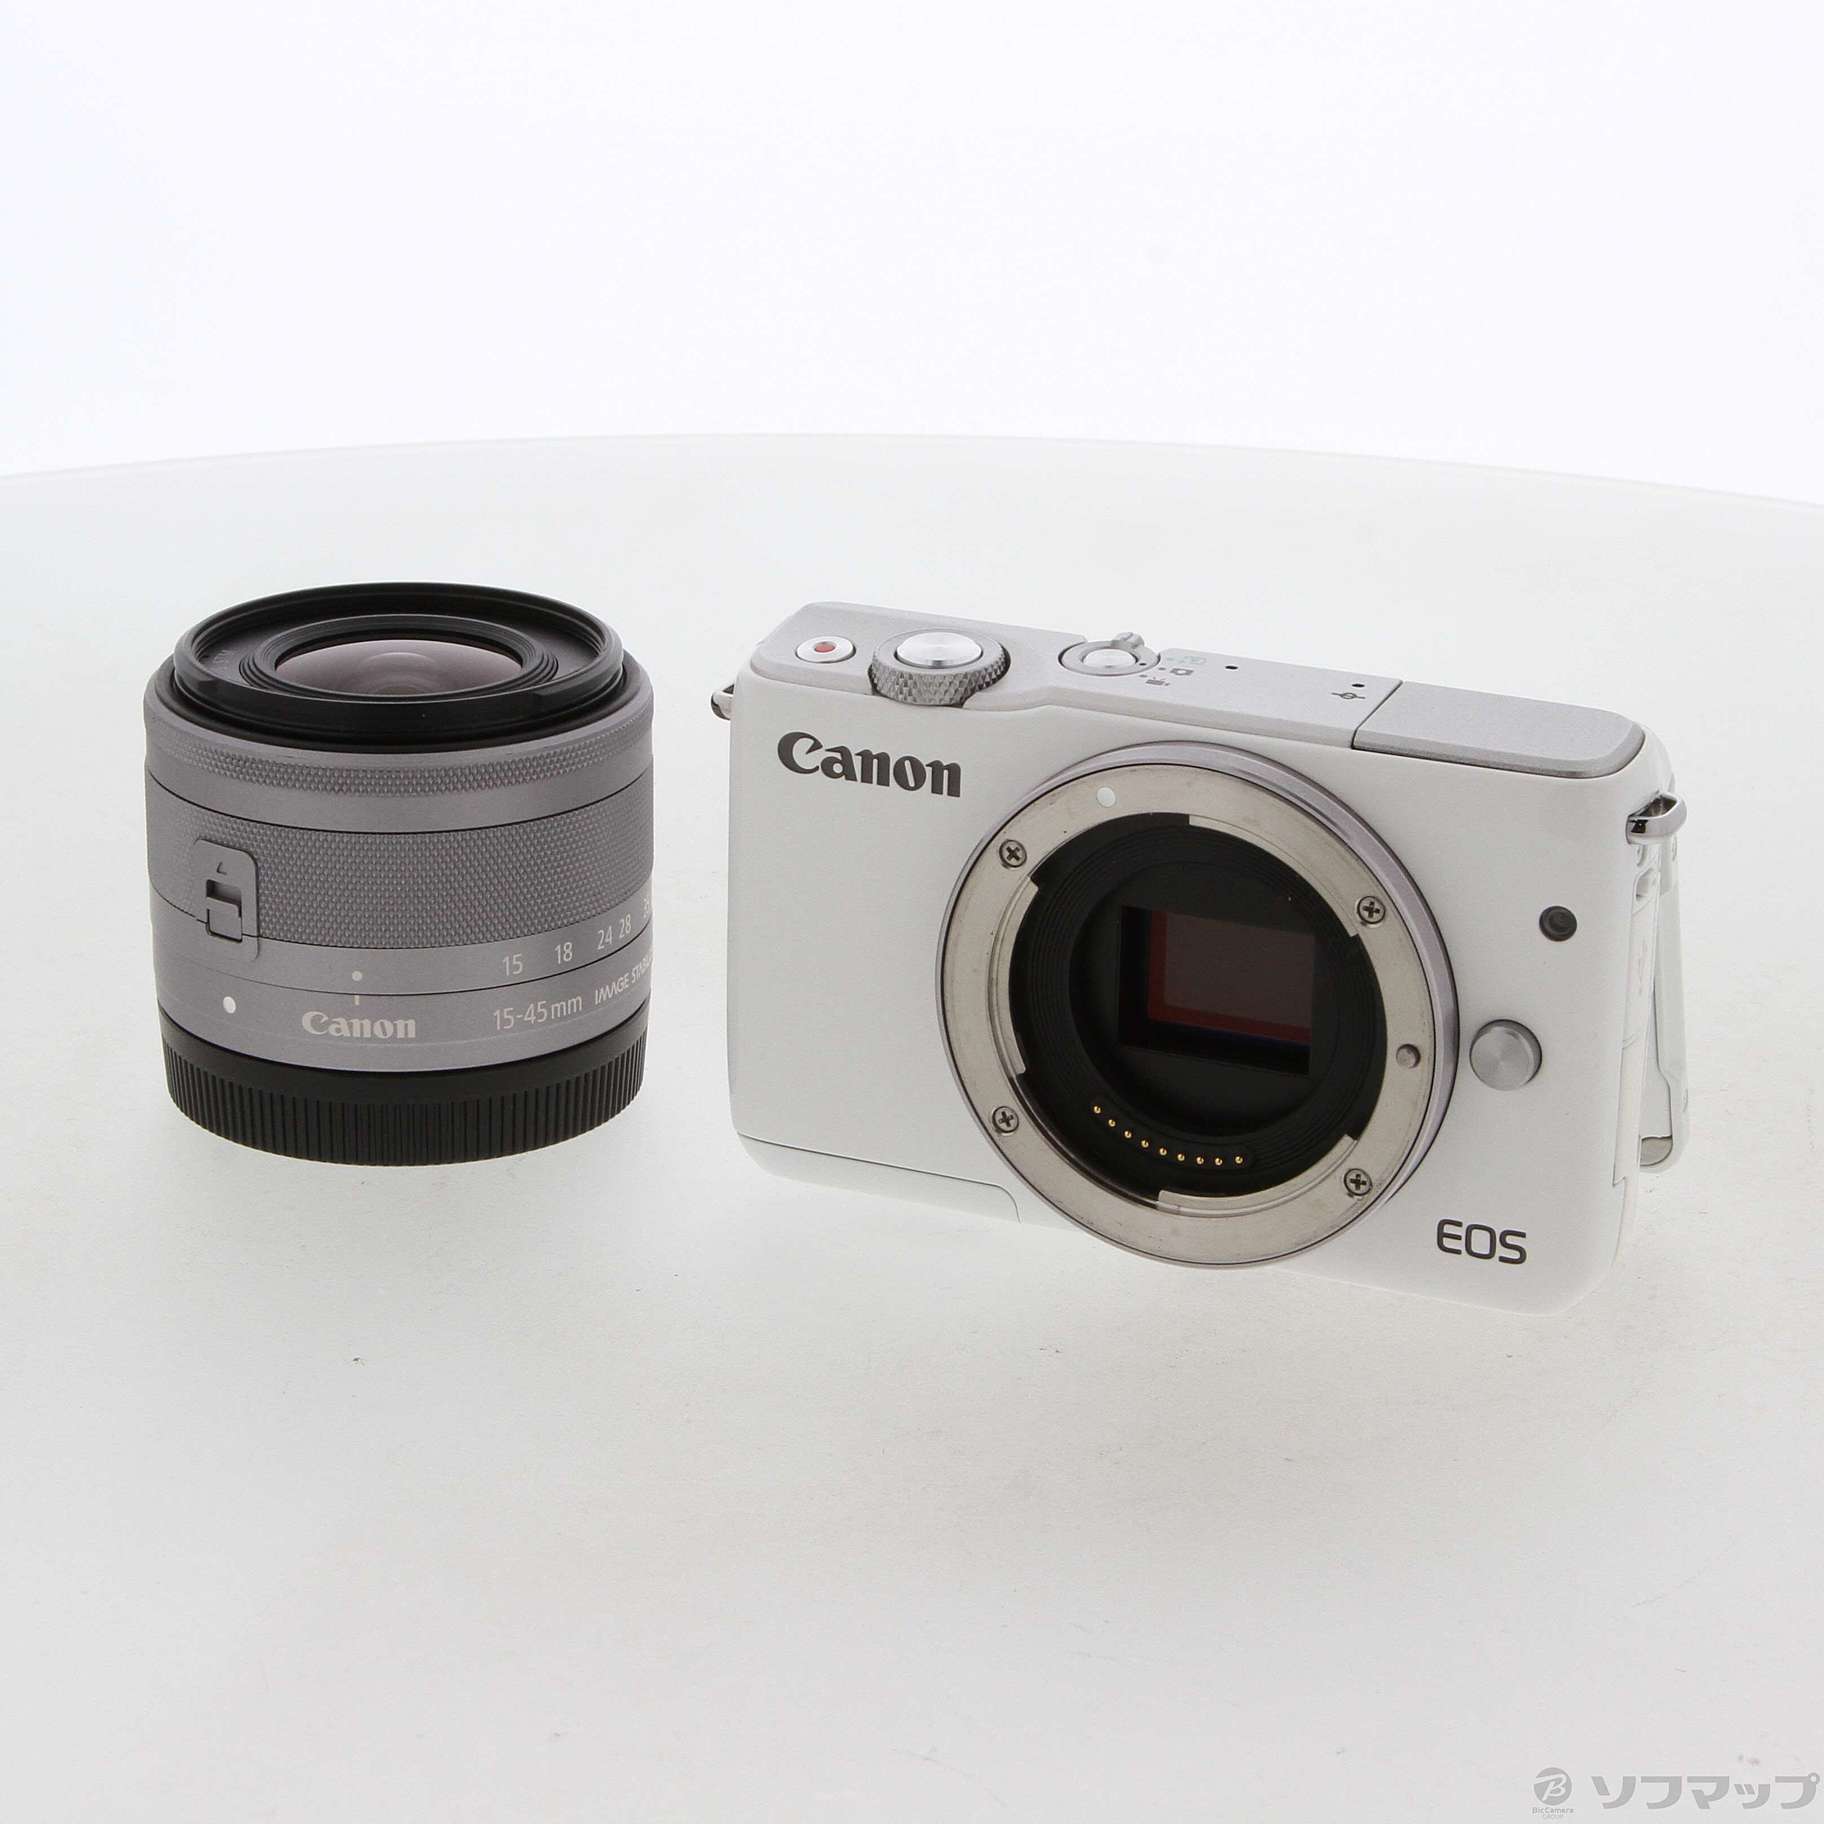 【新品】Canon EOS M10 15-45mmレンズセットミラーレス一眼